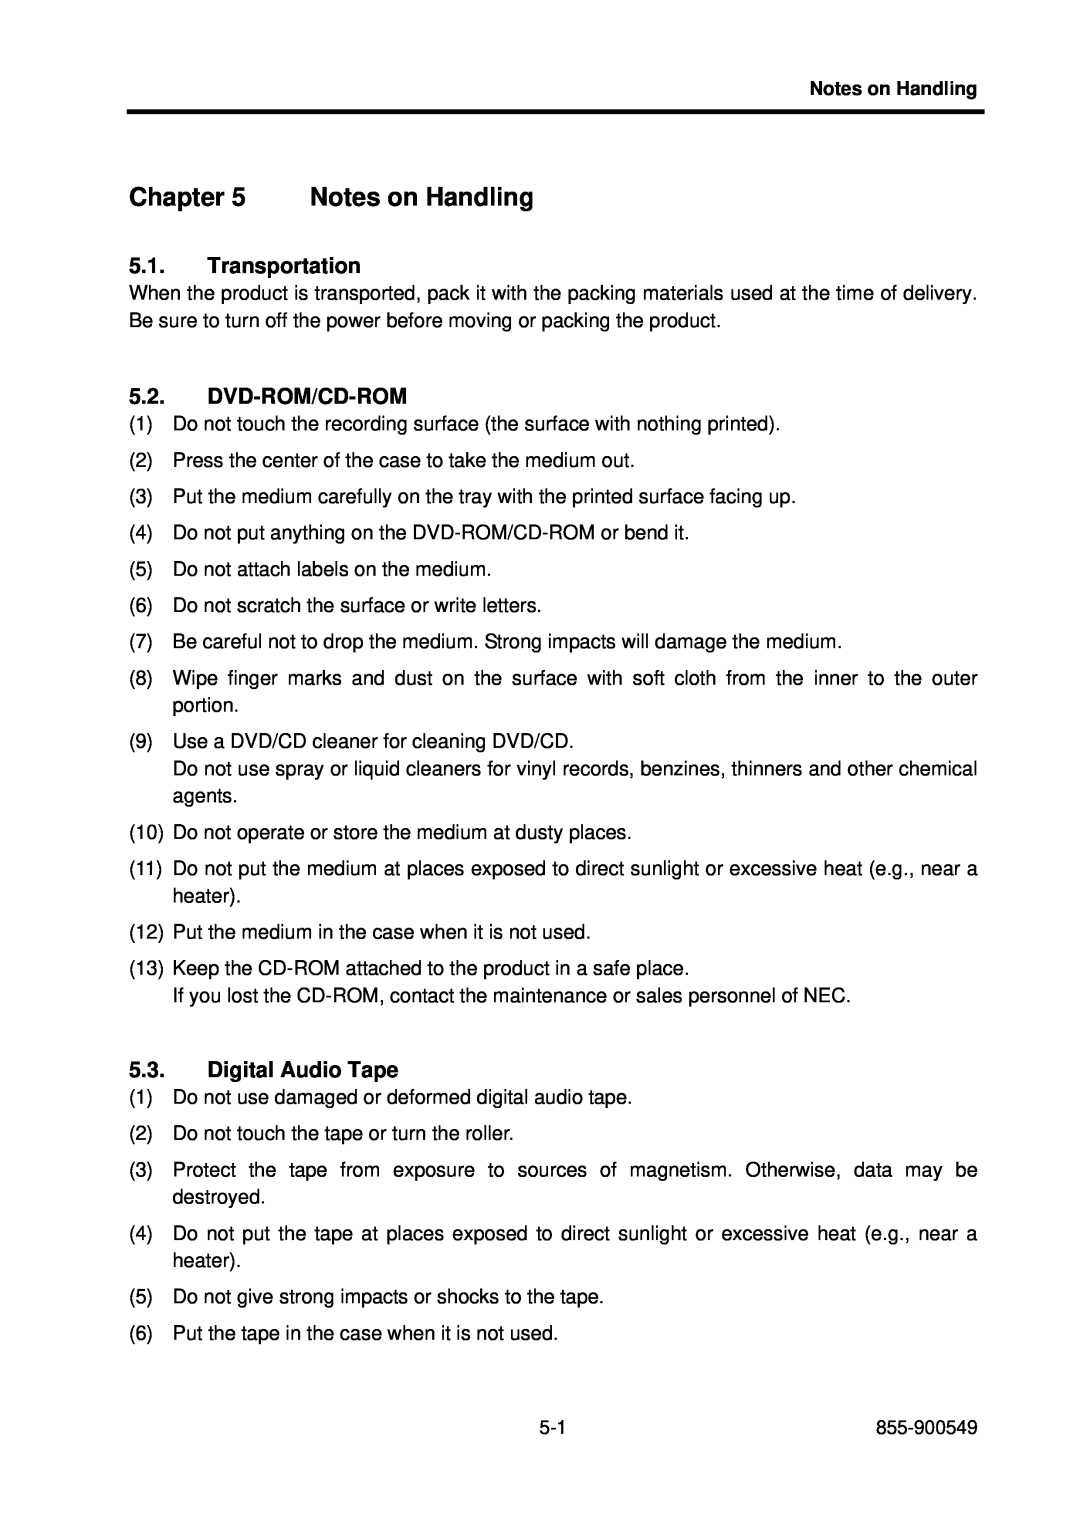 NEC 5020M-16, NX7700i operation manual Notes on Handling, Transportation, Dvd-Rom/Cd-Rom, Digital Audio Tape 